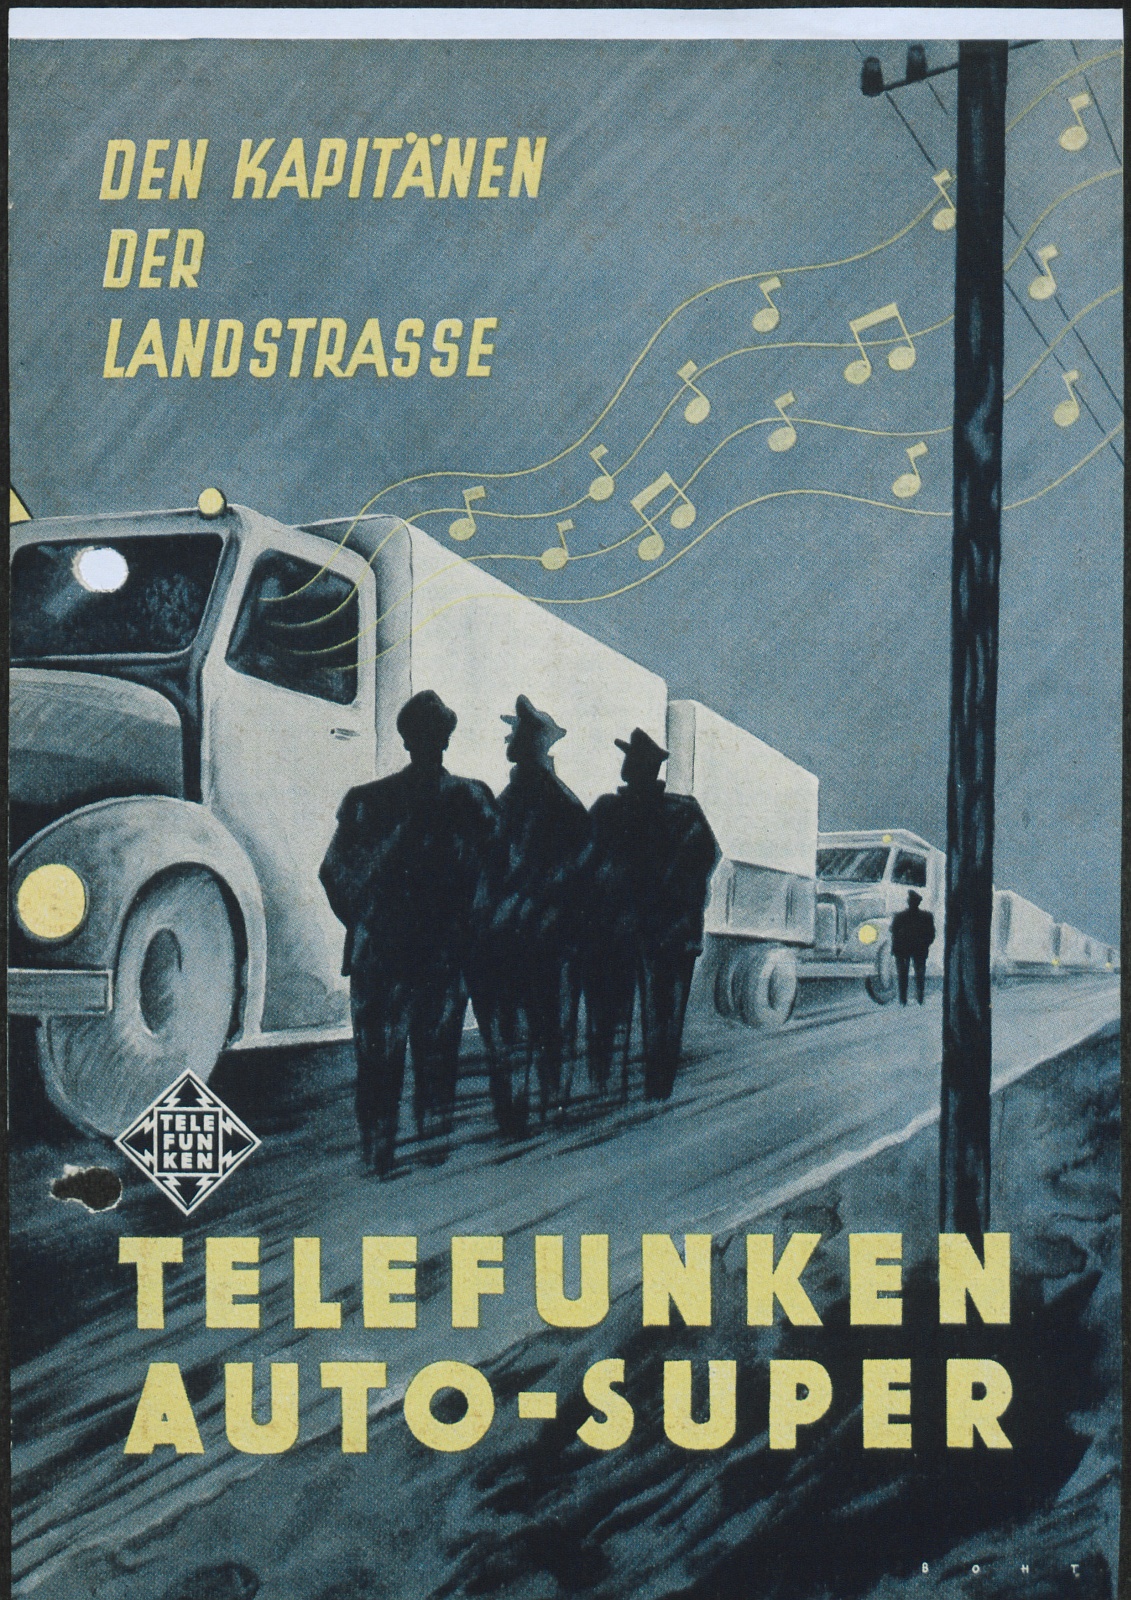 Werbeblatt: Den Kapitänen der Landstrasse Telefunken Auto-Super (Stiftung Deutsches Technikmuseum Berlin CC0)